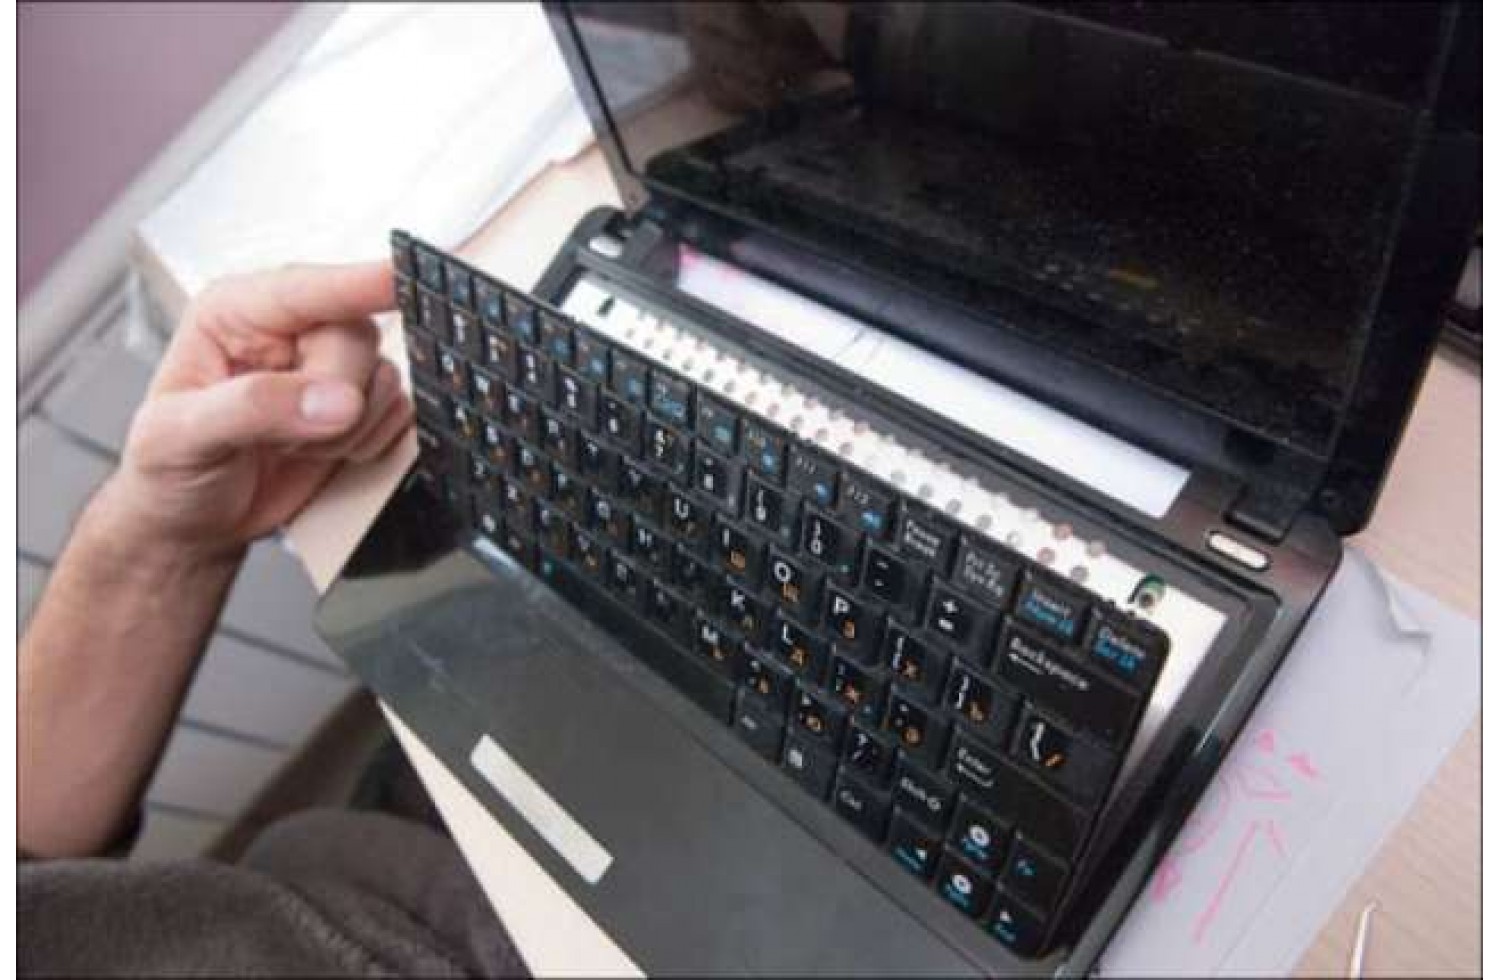 Замена клавиатуры на ноутбуке ростов